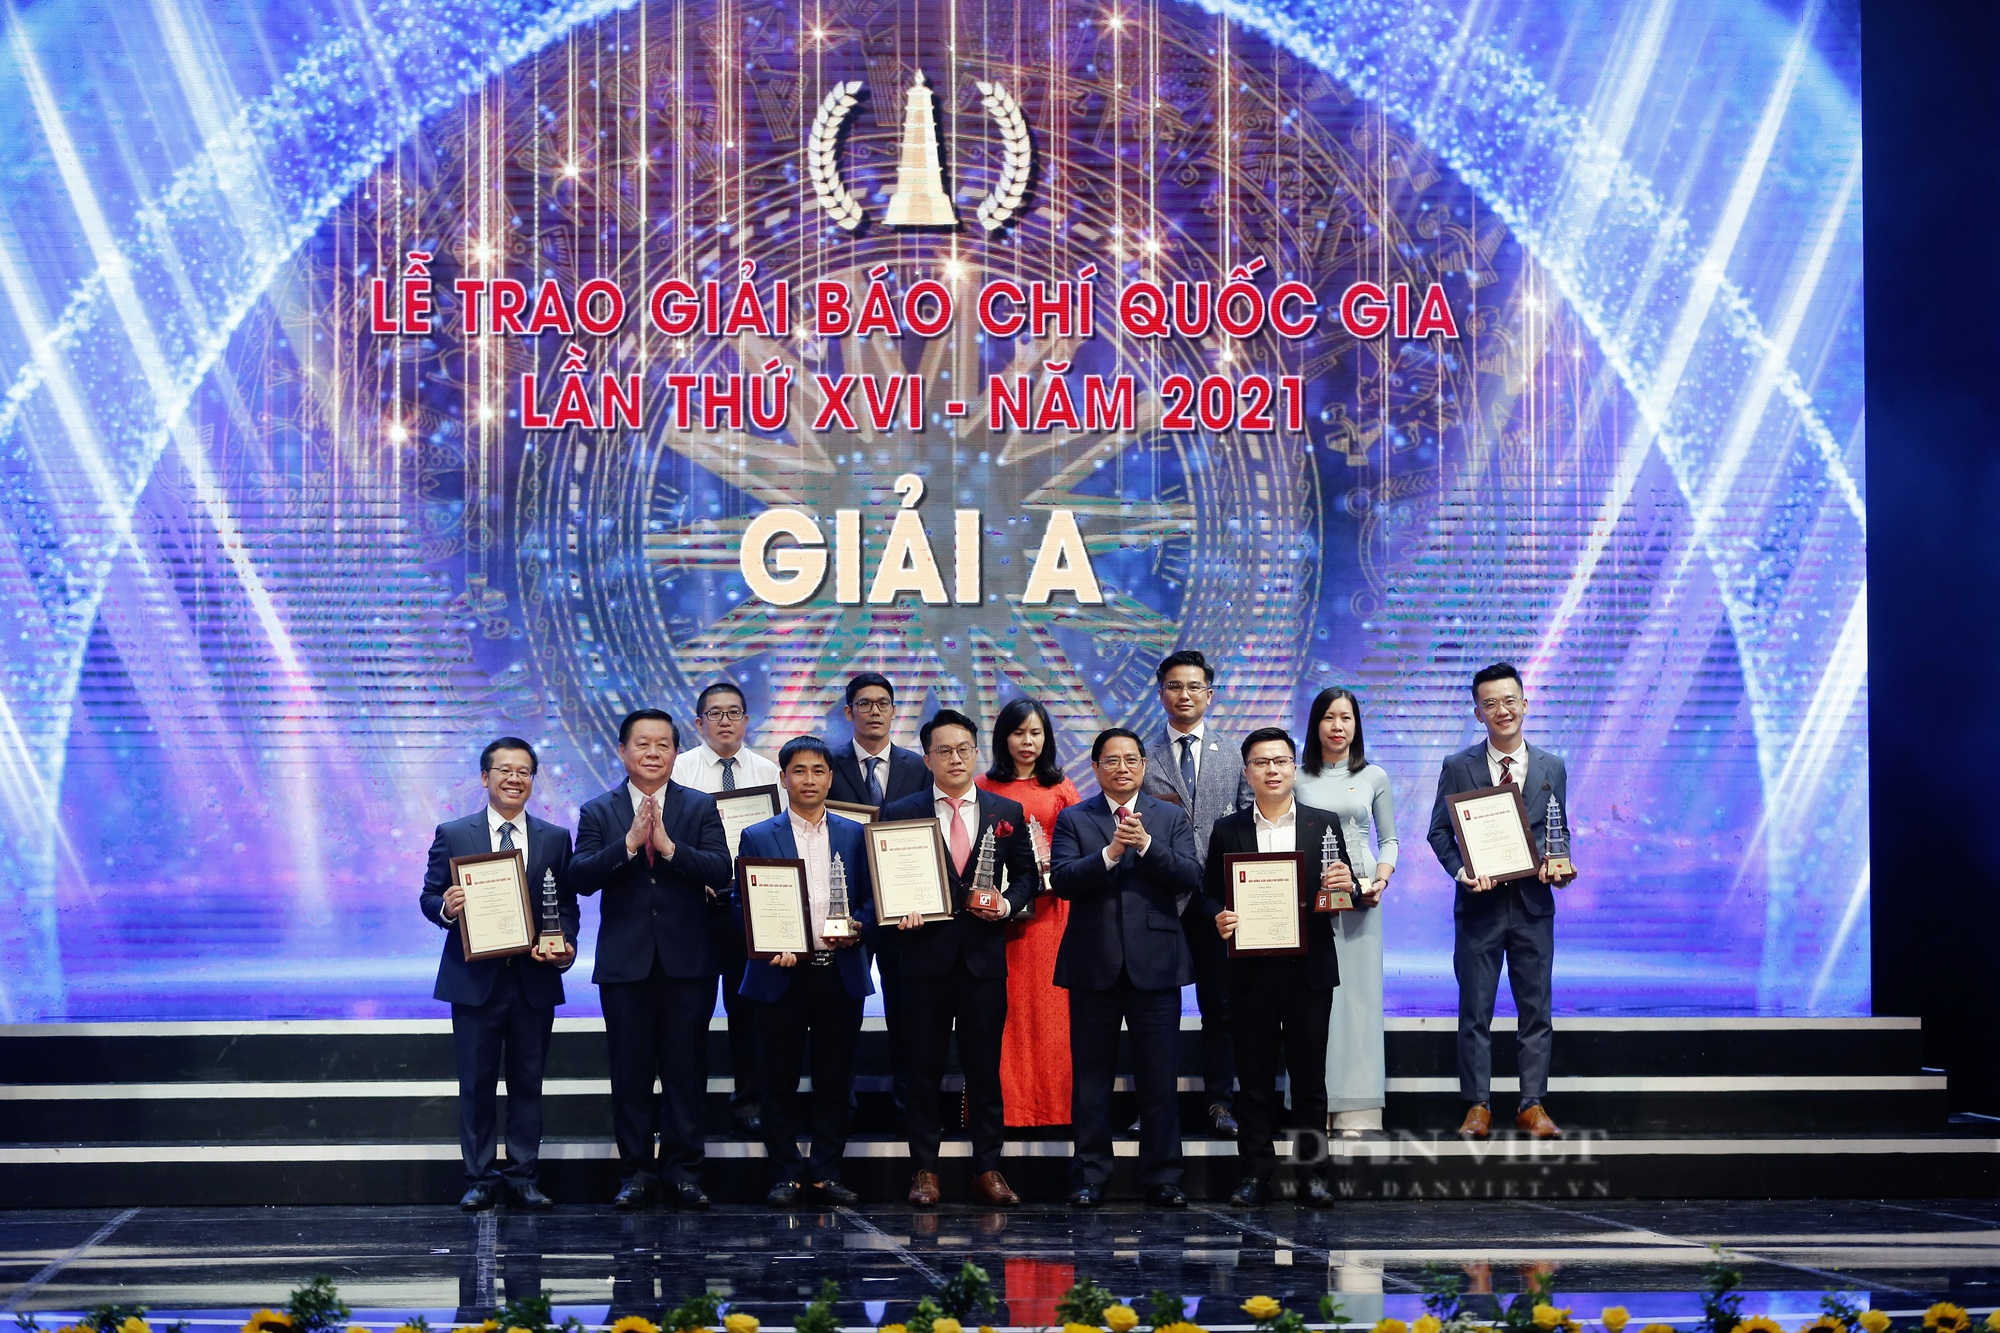 Báo NTNN/Dân Việt đoạt hàng loạt Giải Báo chí Quốc gia lần thứ XVI - năm 2021 - Ảnh 13.